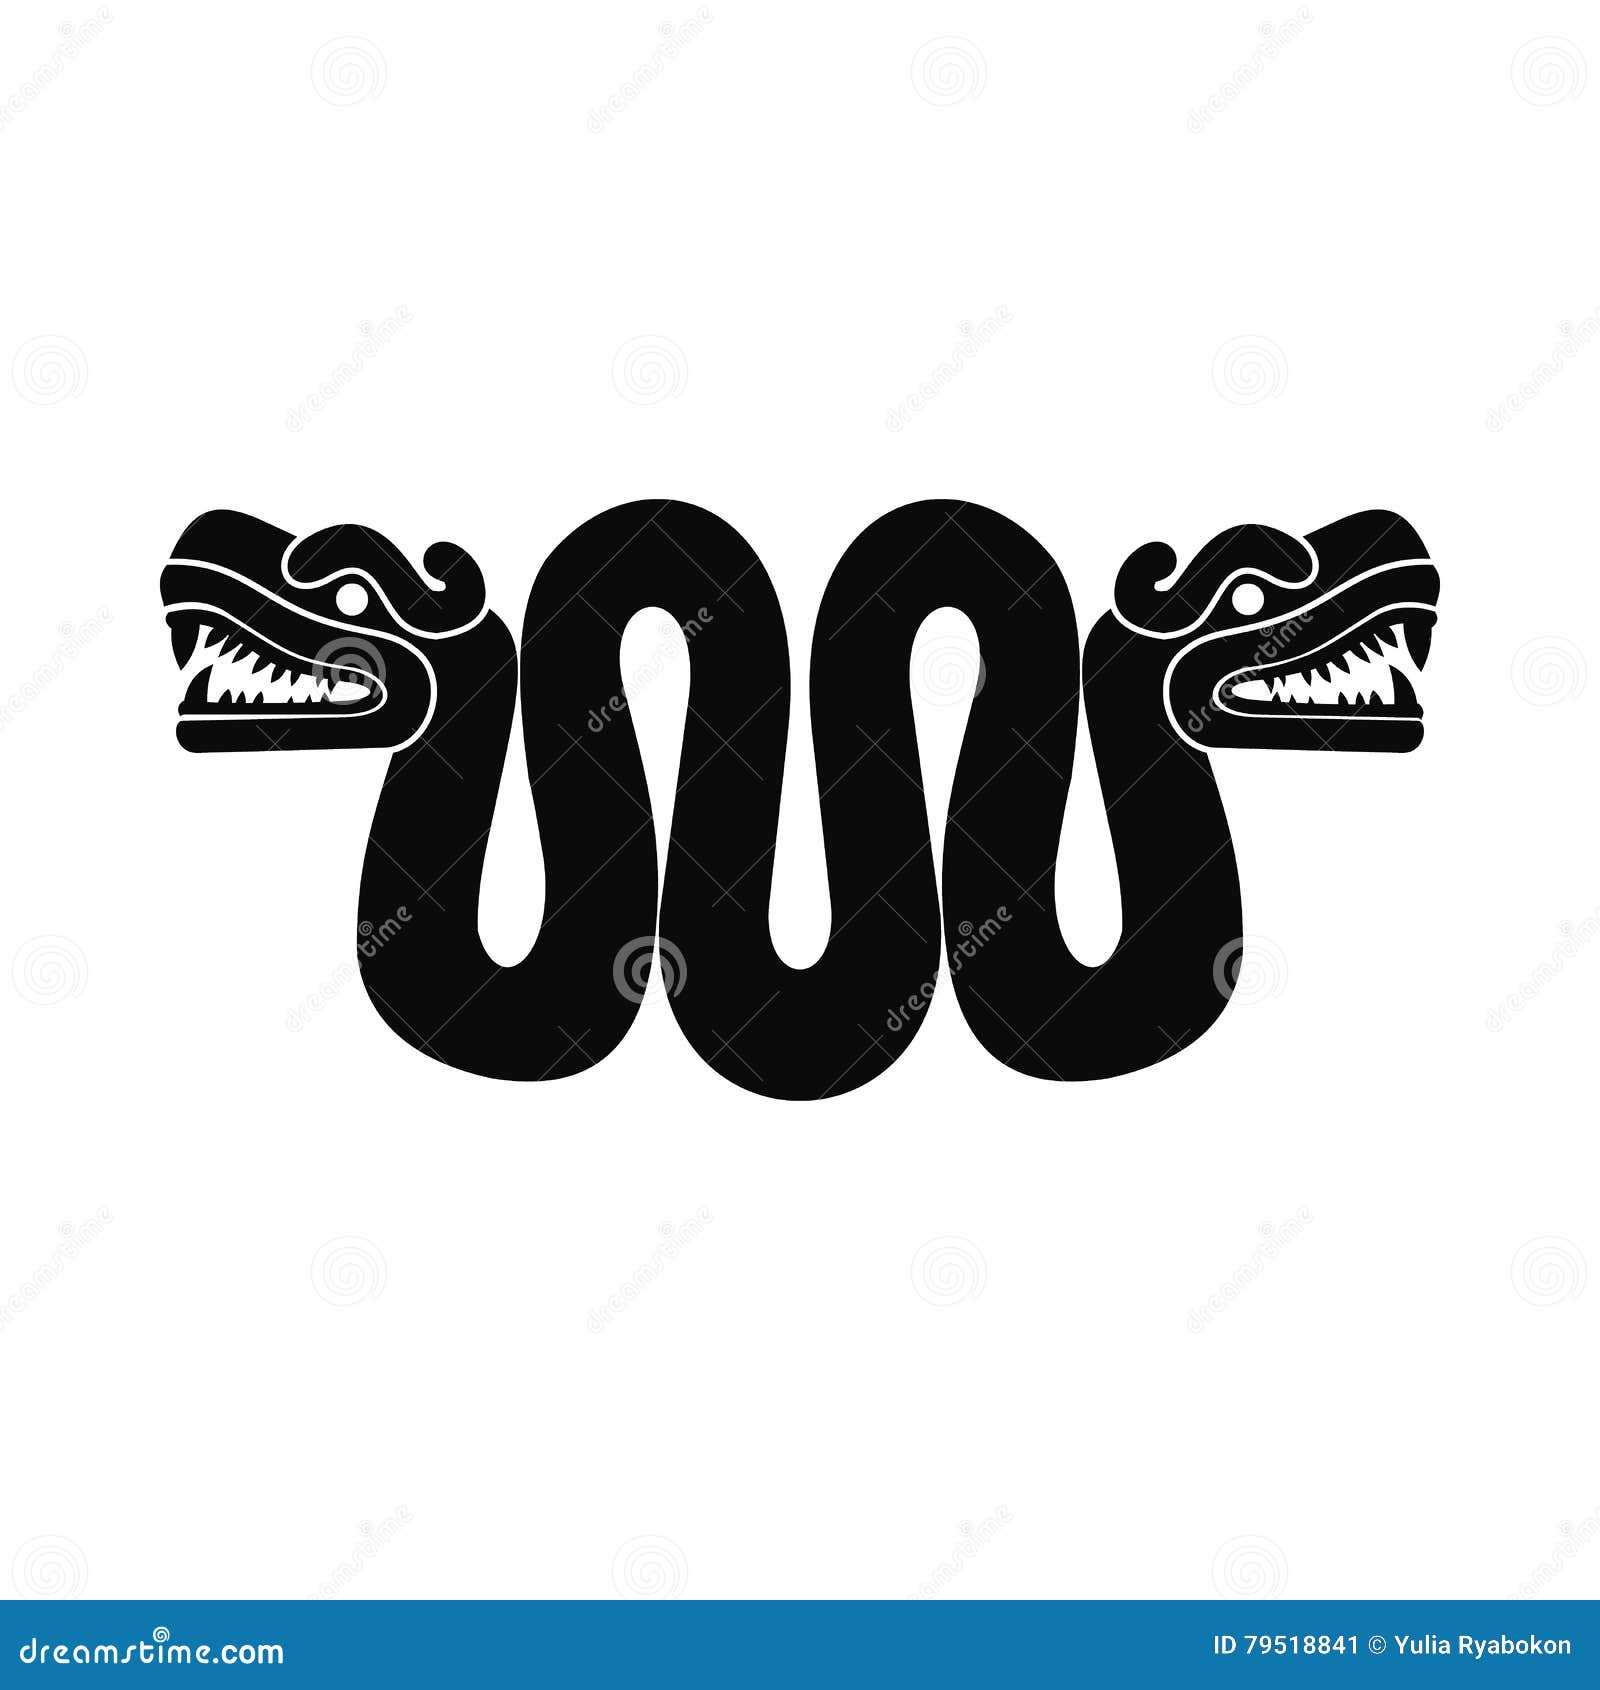 Desenho tradicional americano / A cabeça da serpente é cortada